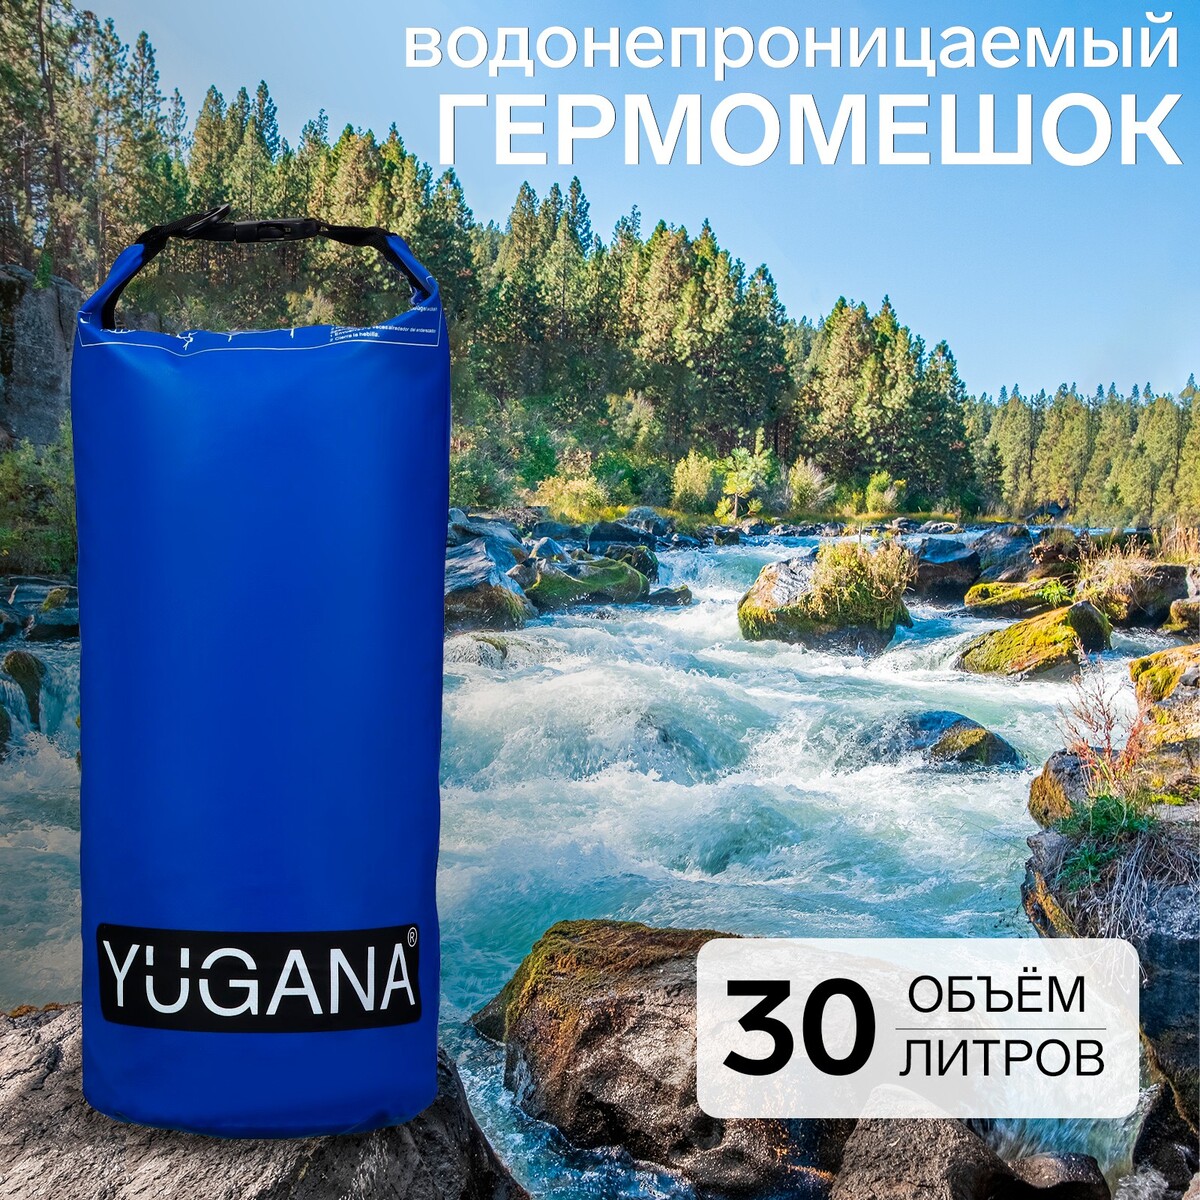 фото Гермомешок yugana, пвх, водонепроницаемый 30 литров, один ремень, синий